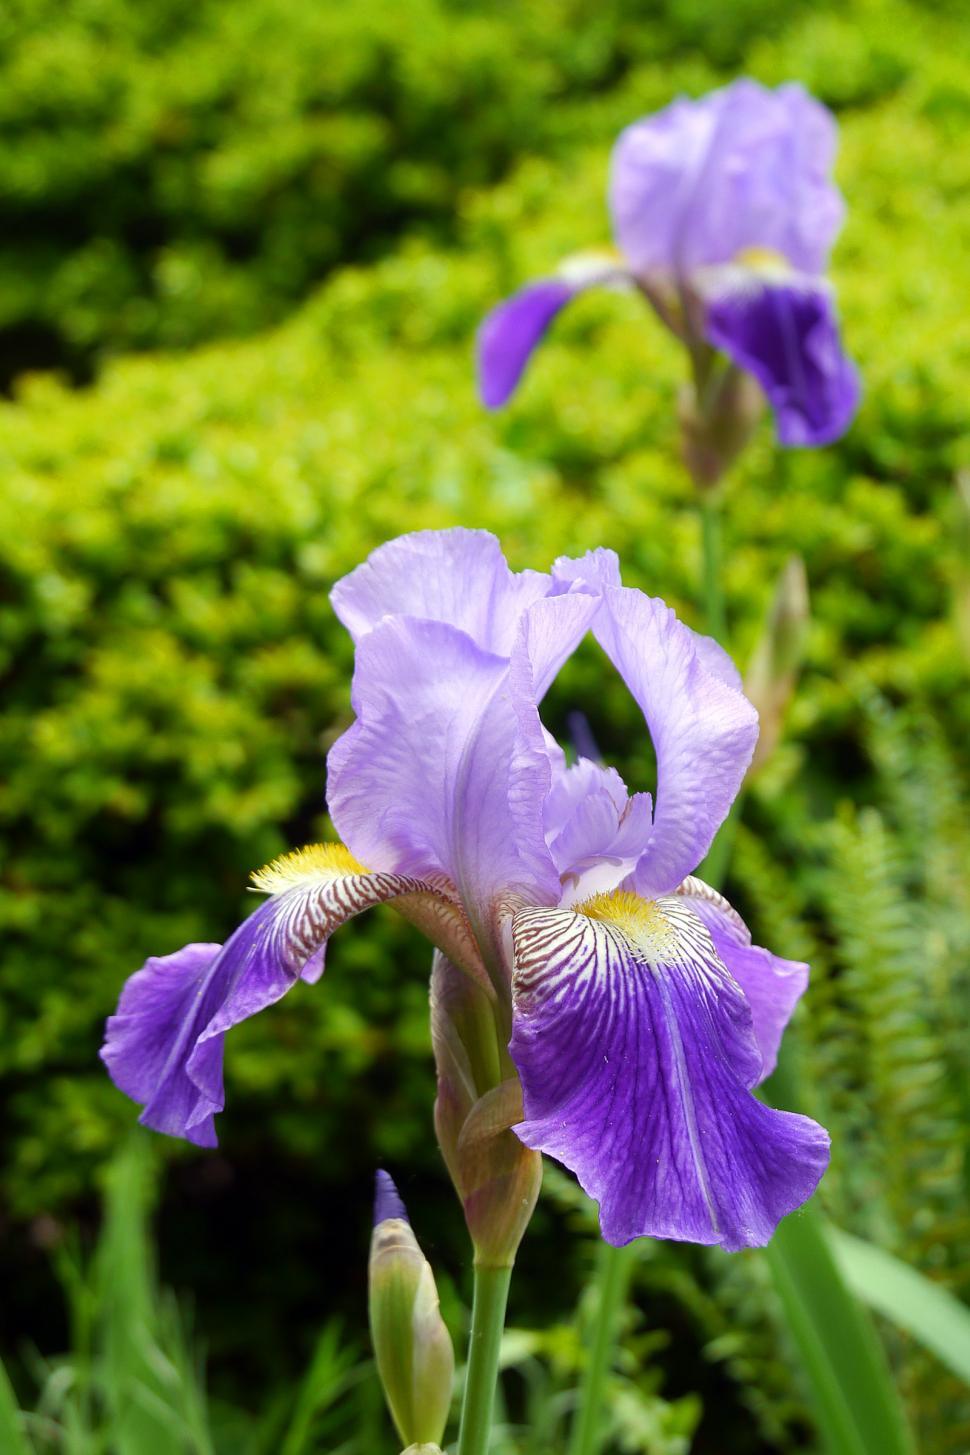 Free Image of Purple Iris Flowers 